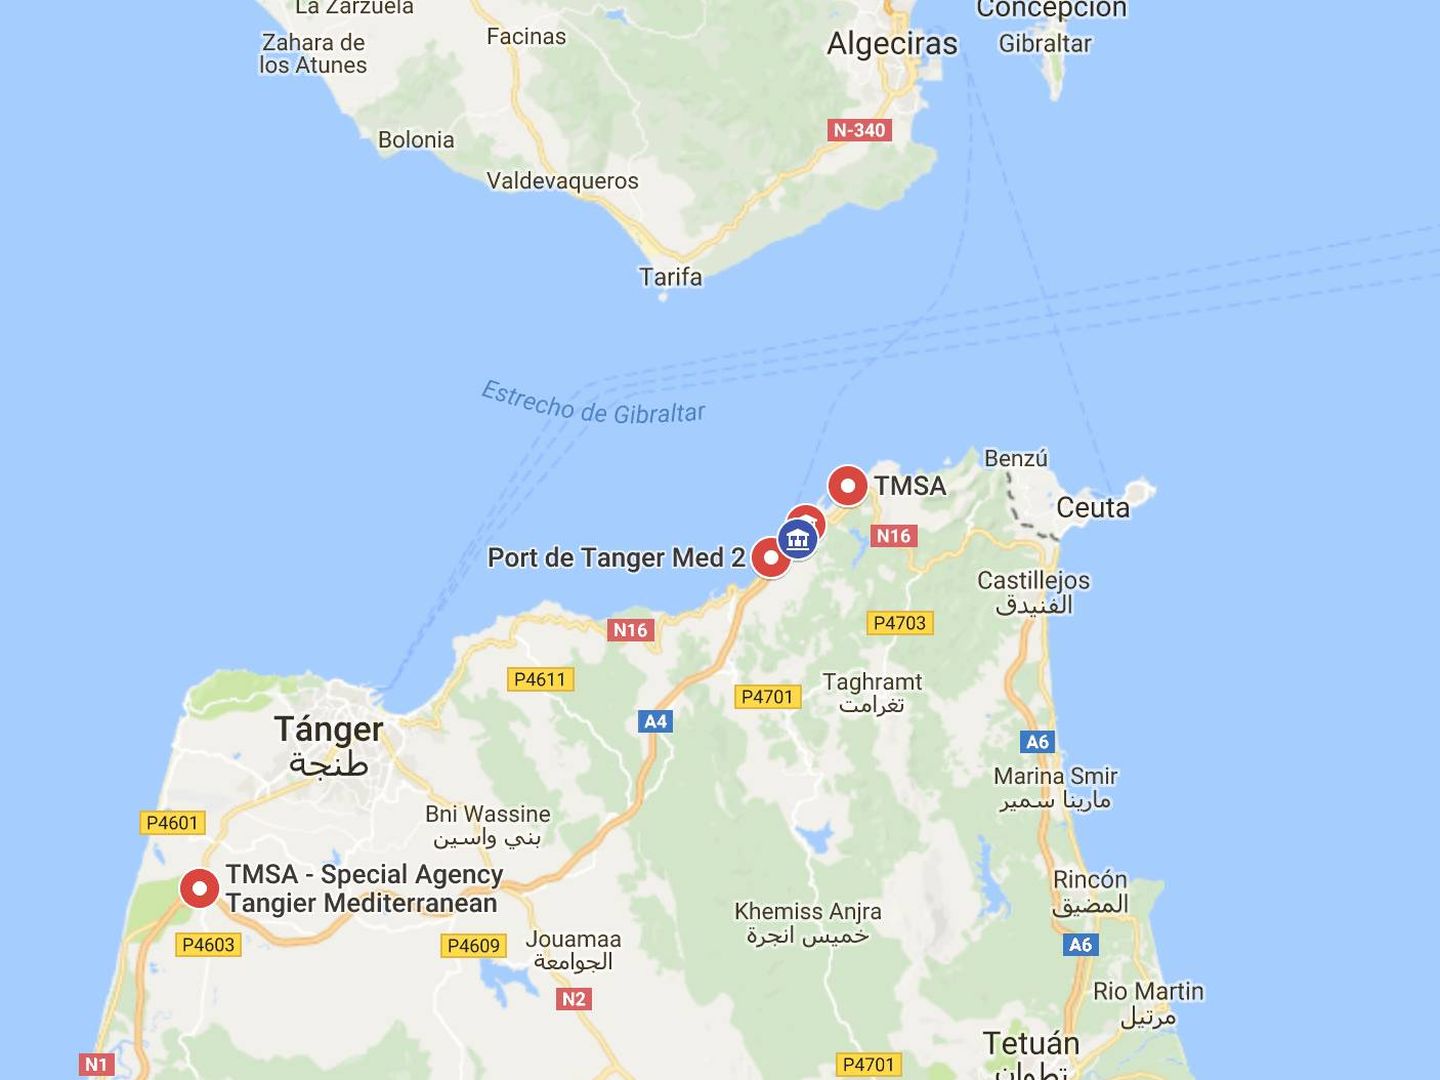 Tanger Med, en la puerta del Mediterráneo, acoge buques de Europa, Asia y América.